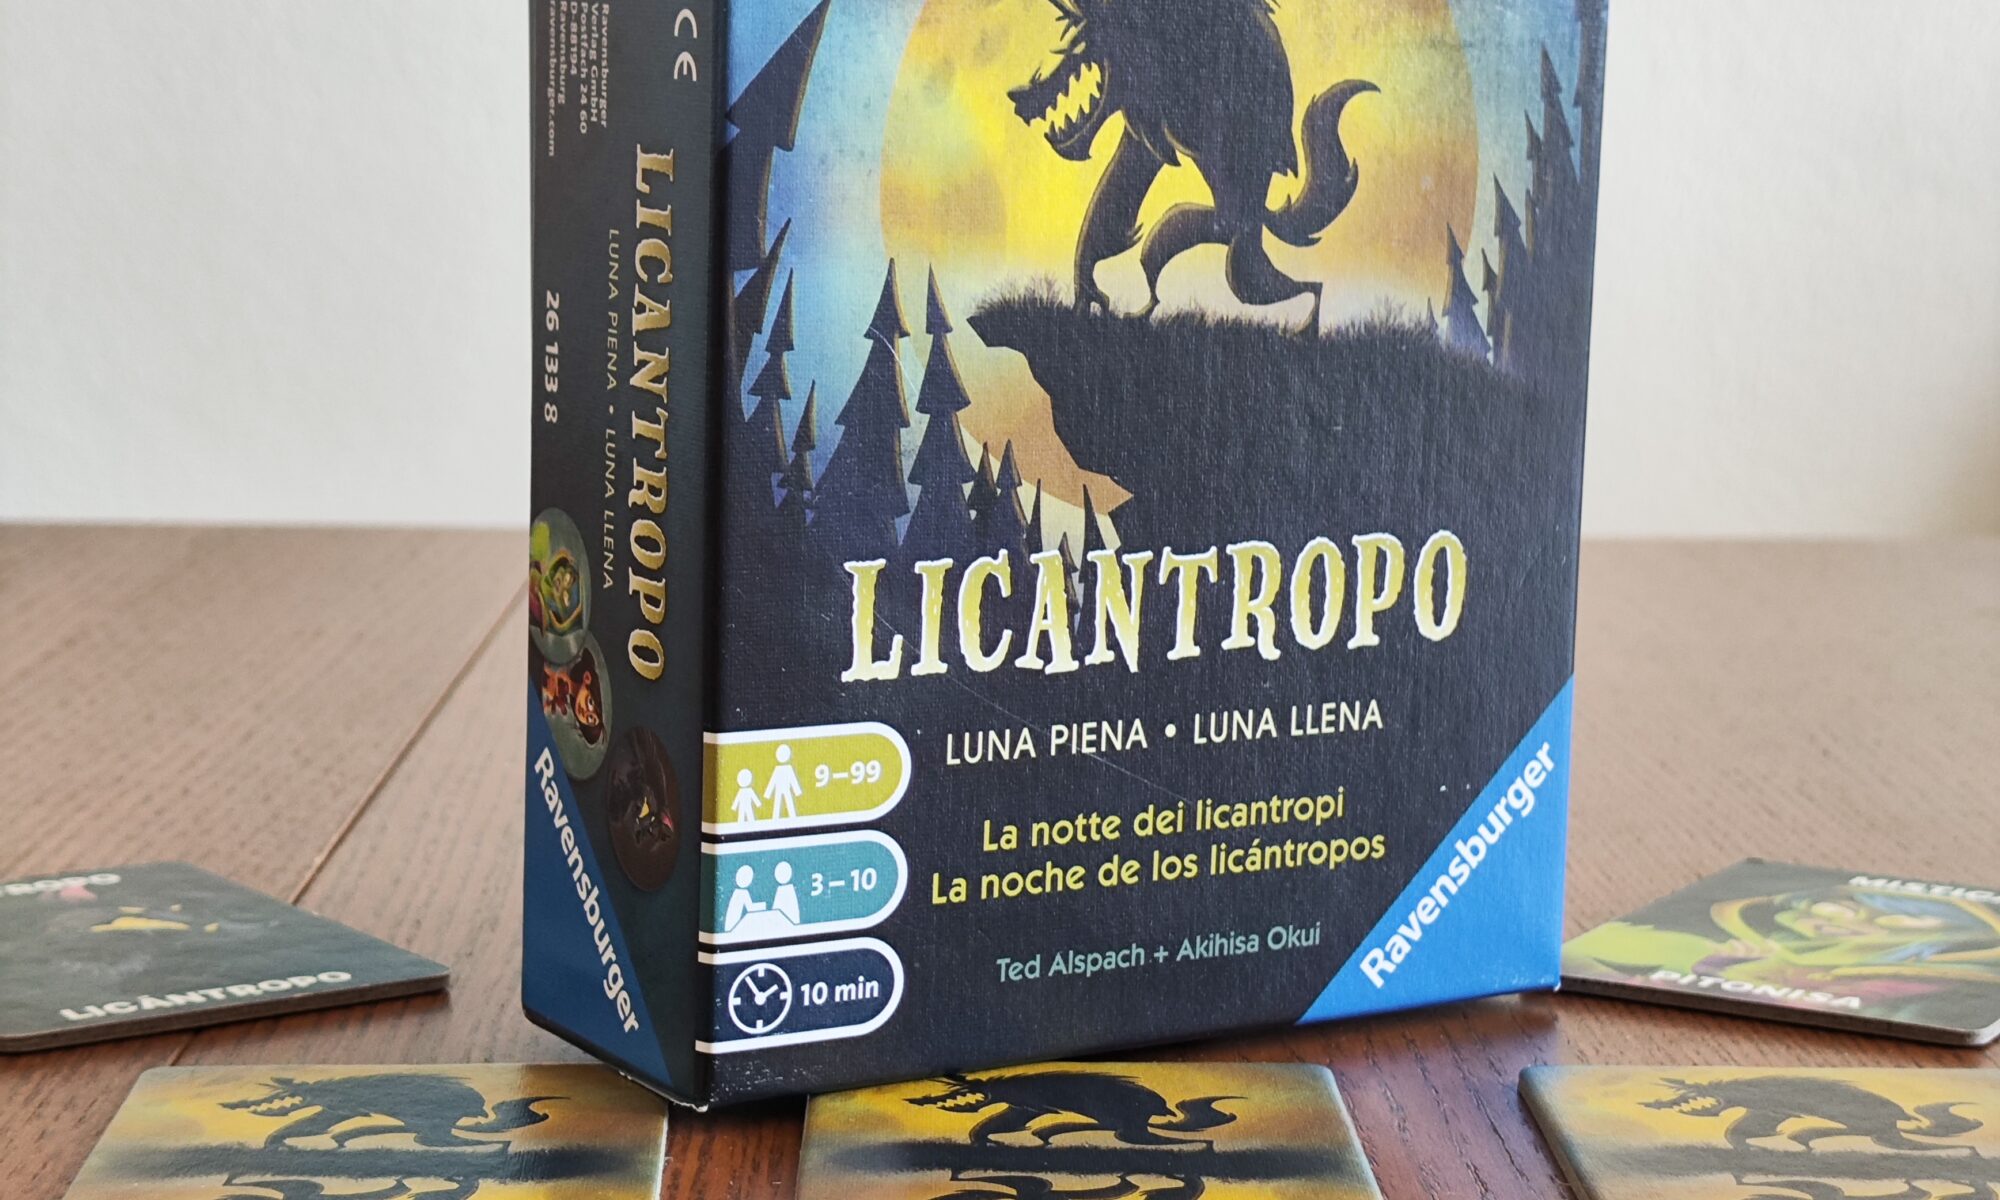 Licantropo - Luna Piena, box